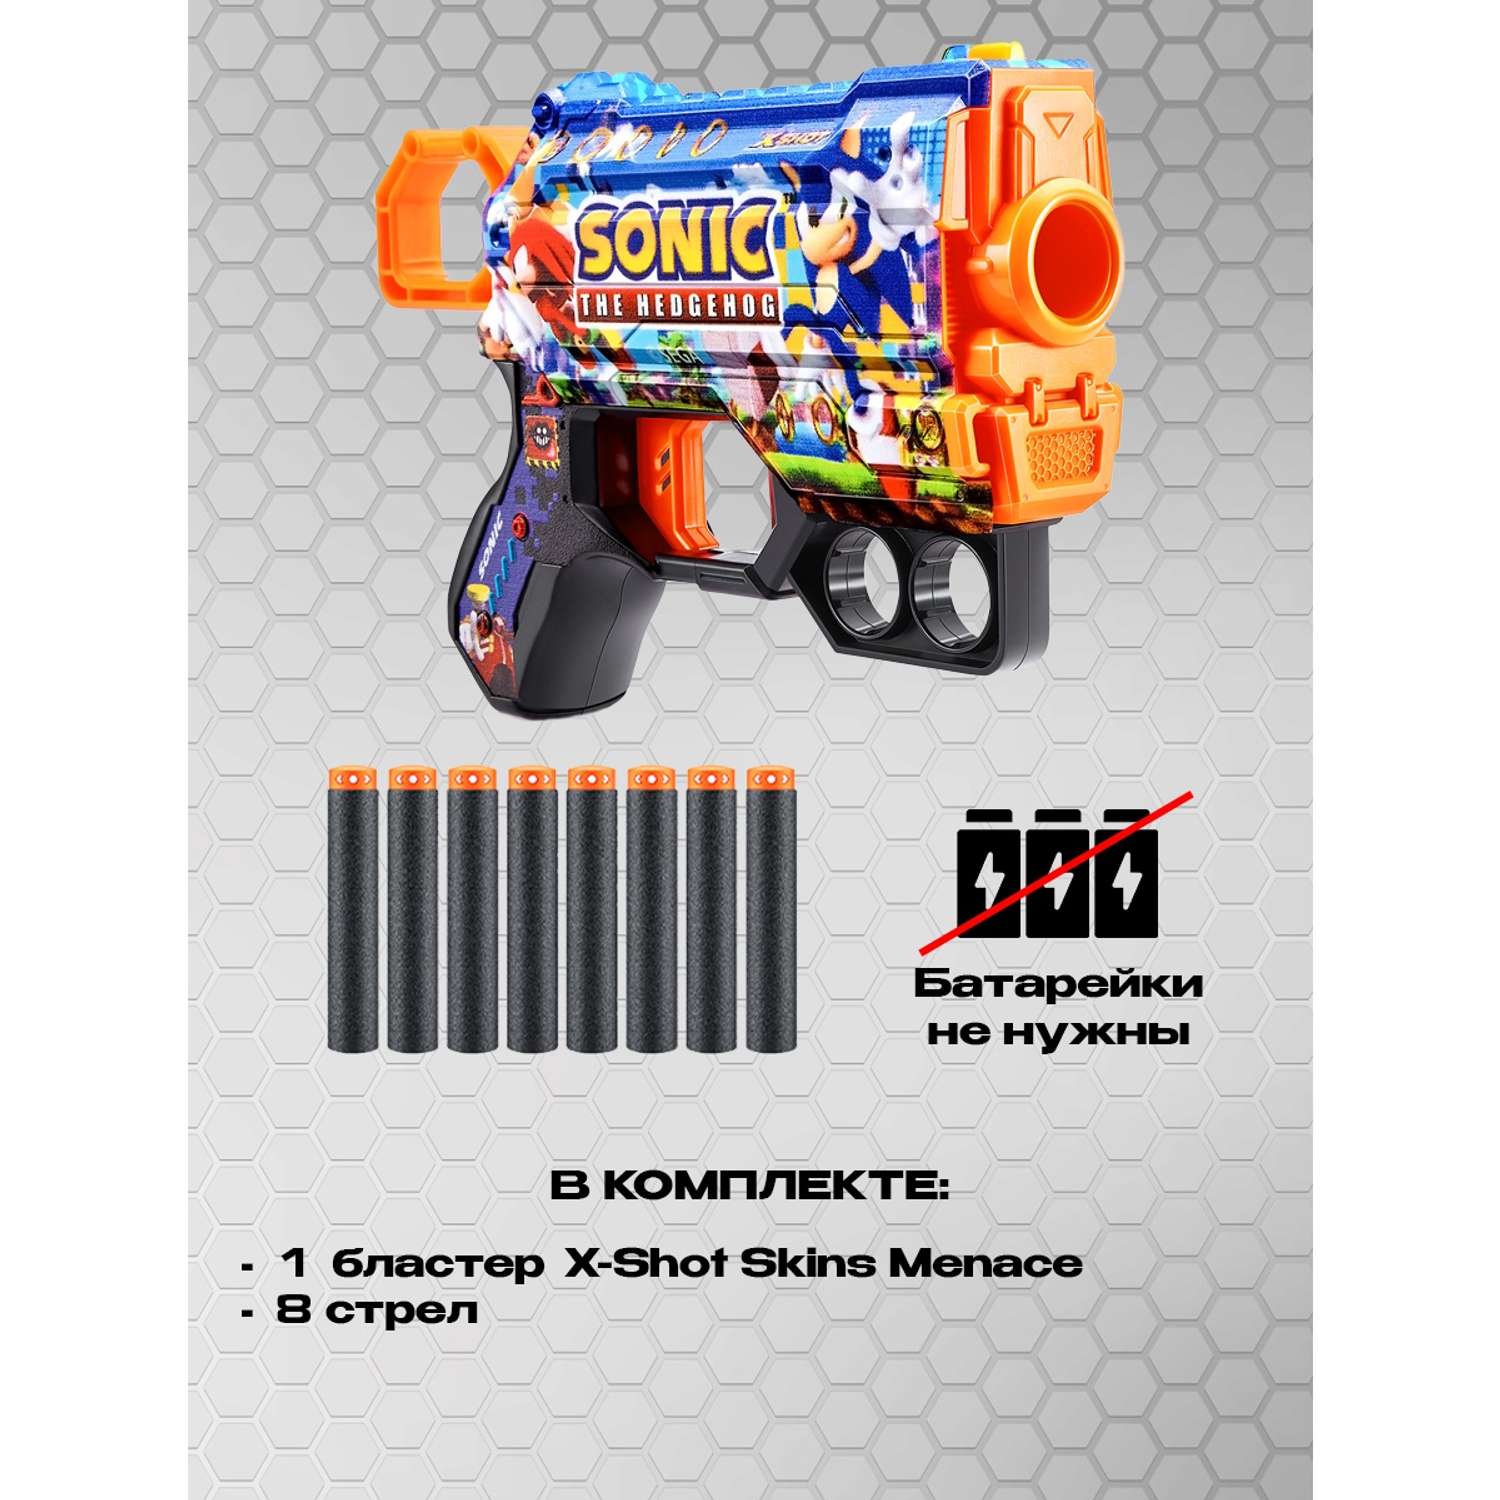 Набор для стрельбы X-Shot Skins Menace Sonic в ассортименте 36679 - фото 3